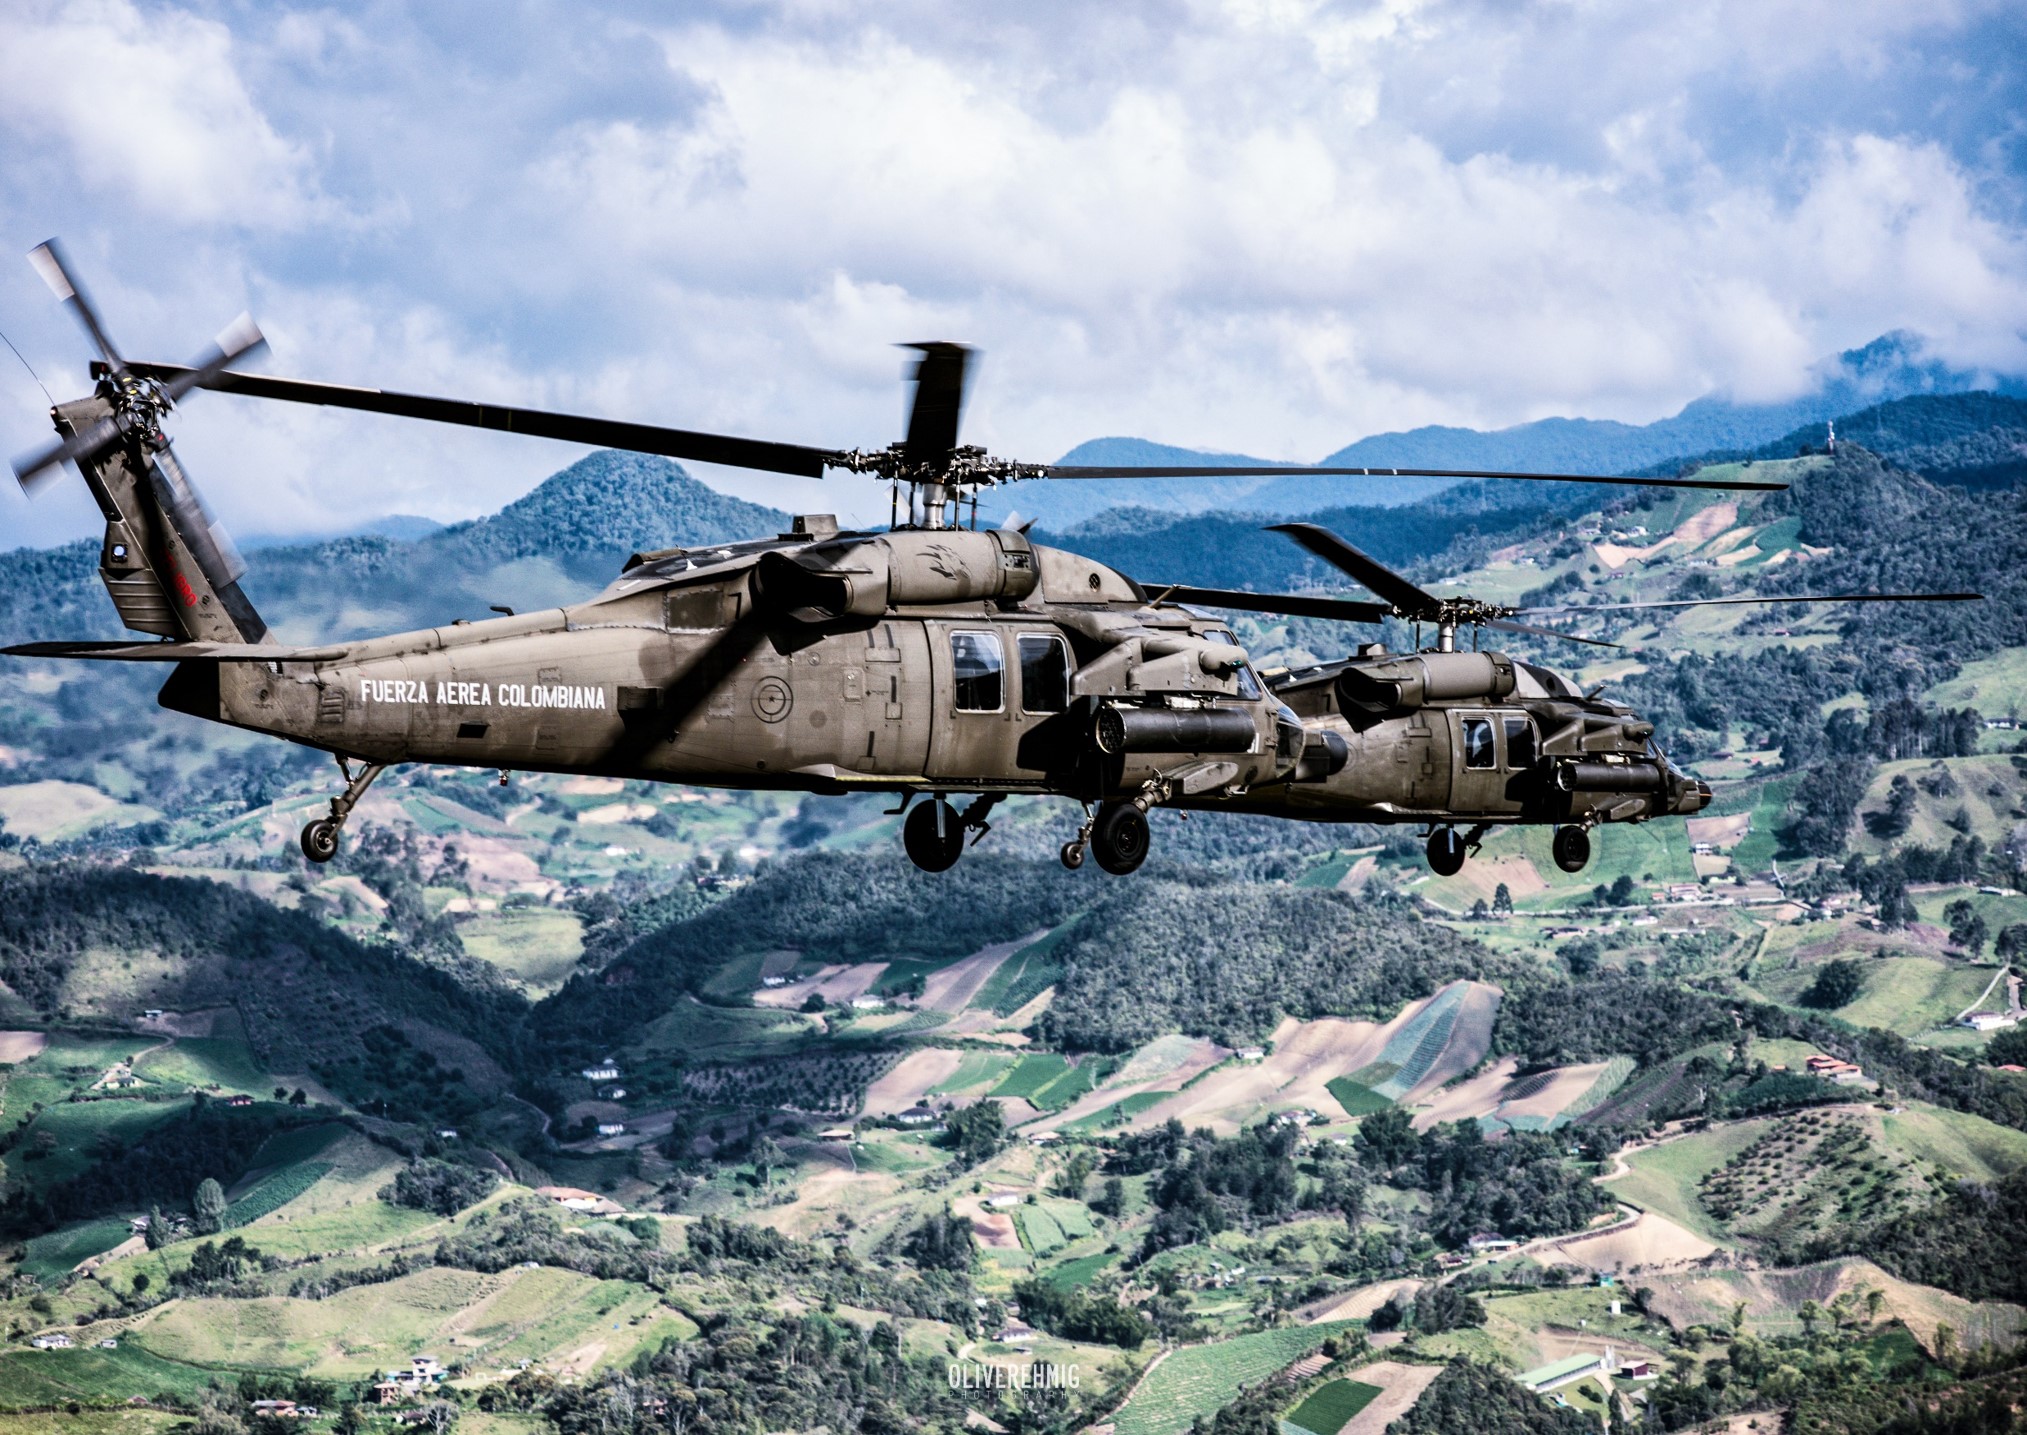 Helicóptero arpía de la Fuerza Aérea sostiene presencia en el nororiente de Medellín 